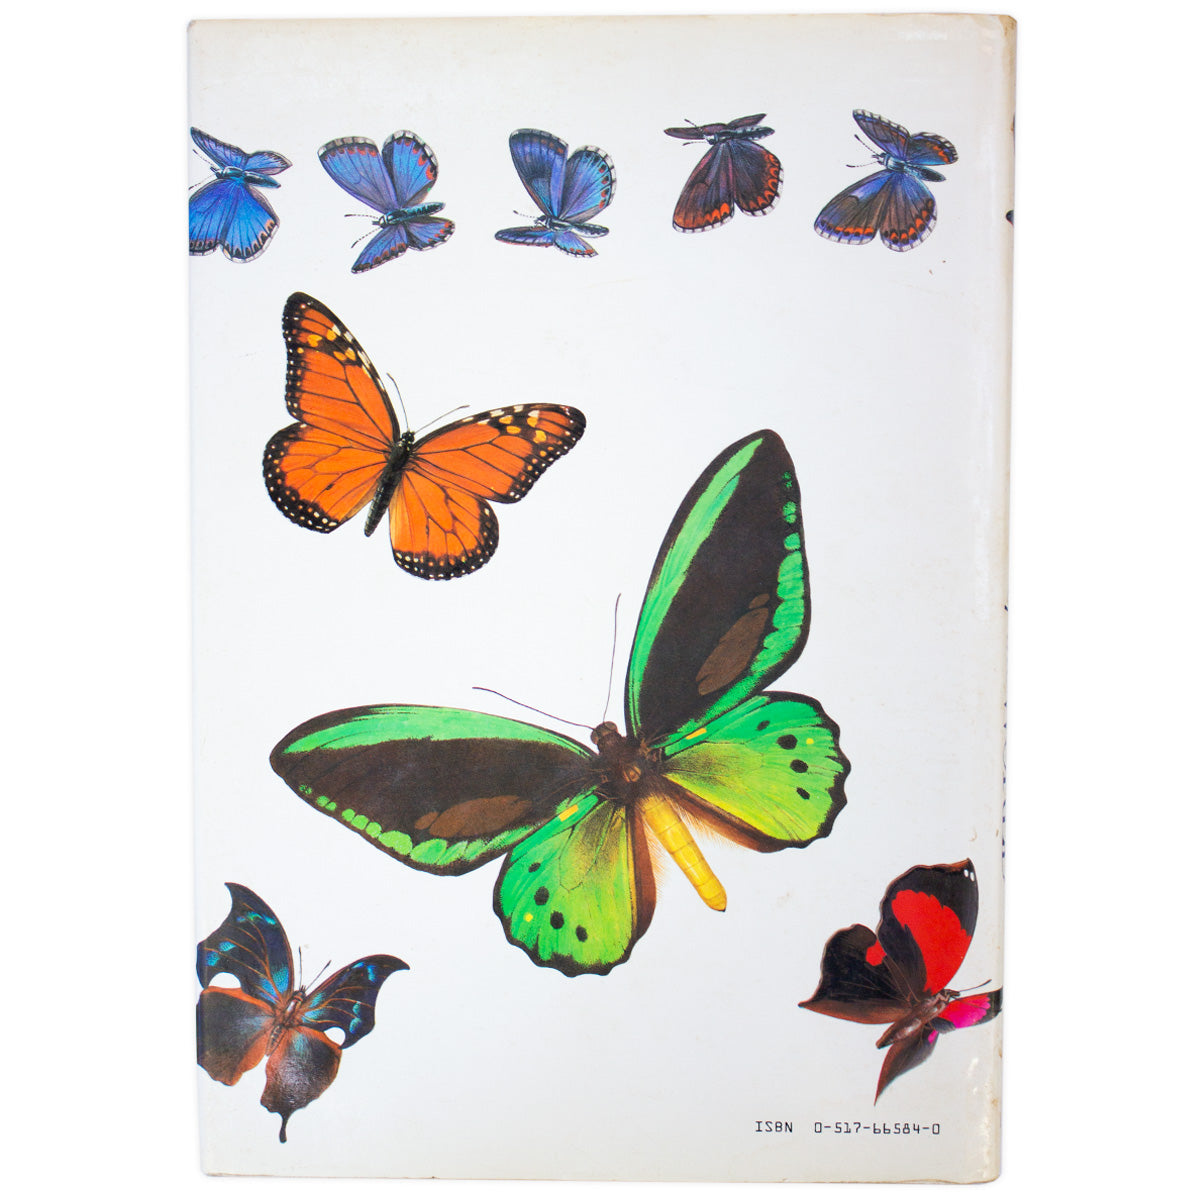 Book; Butterflies of the World